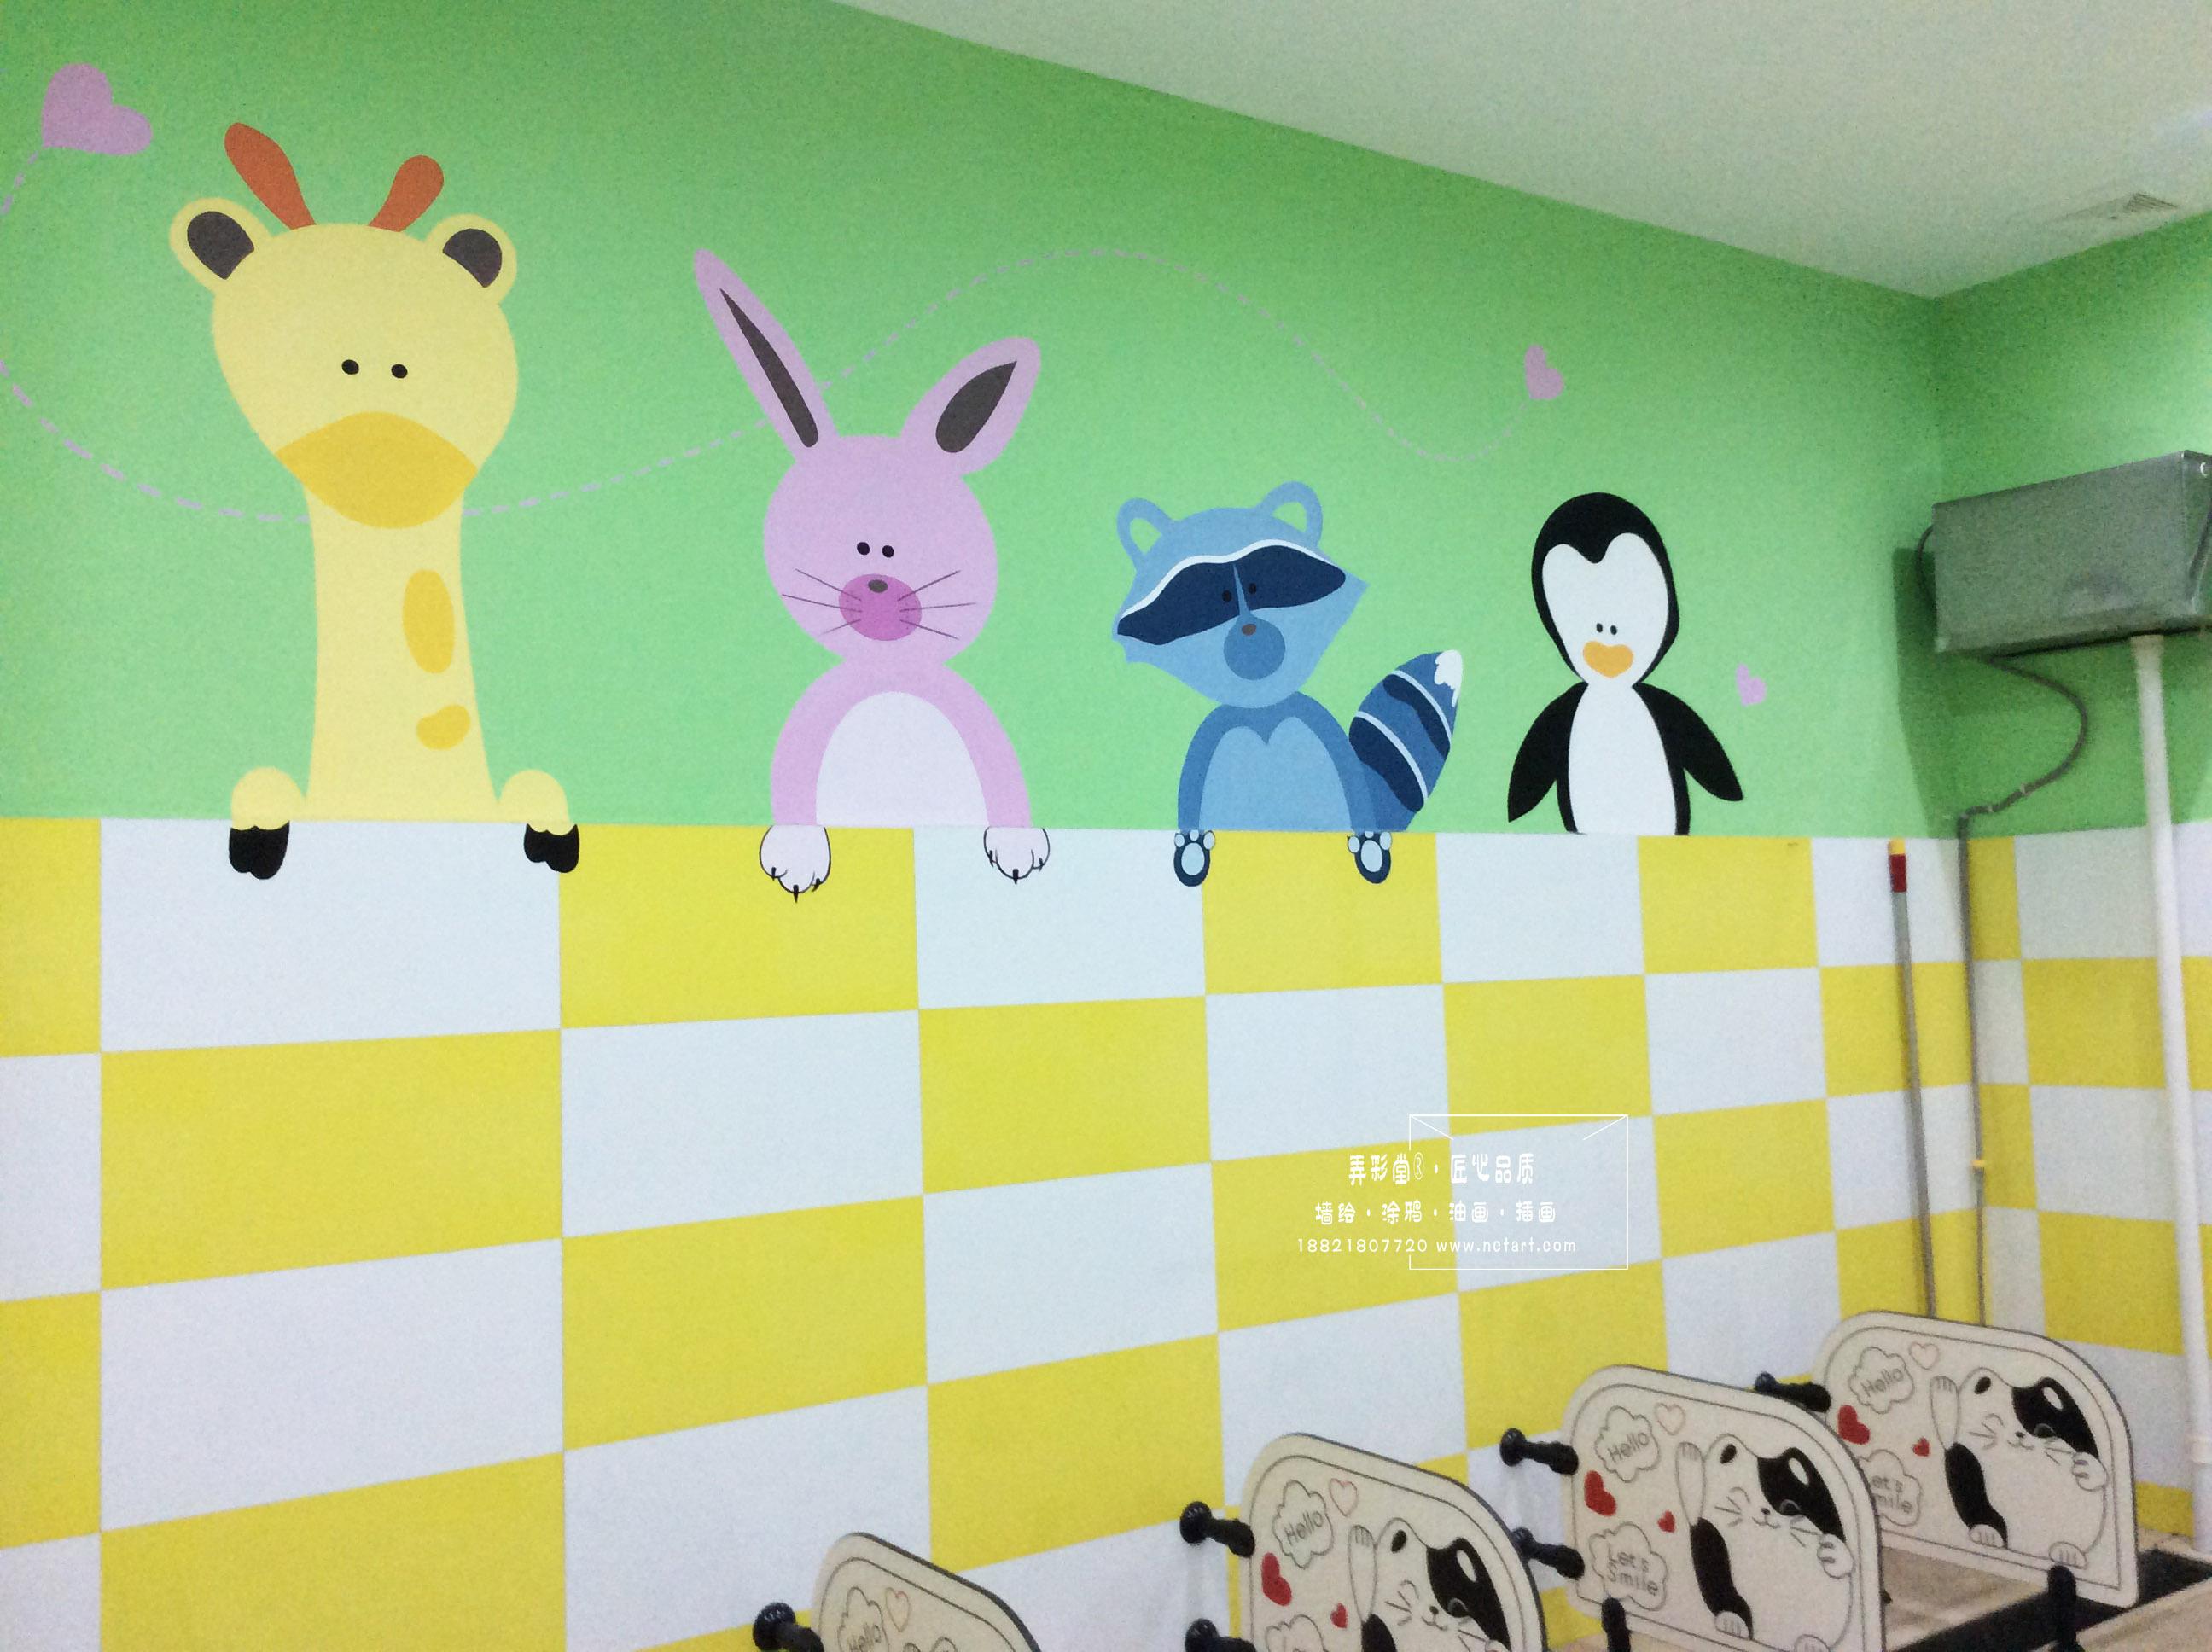 幼儿园外墙设计图片(简单好看的幼儿园墙面欣赏) _视觉癖